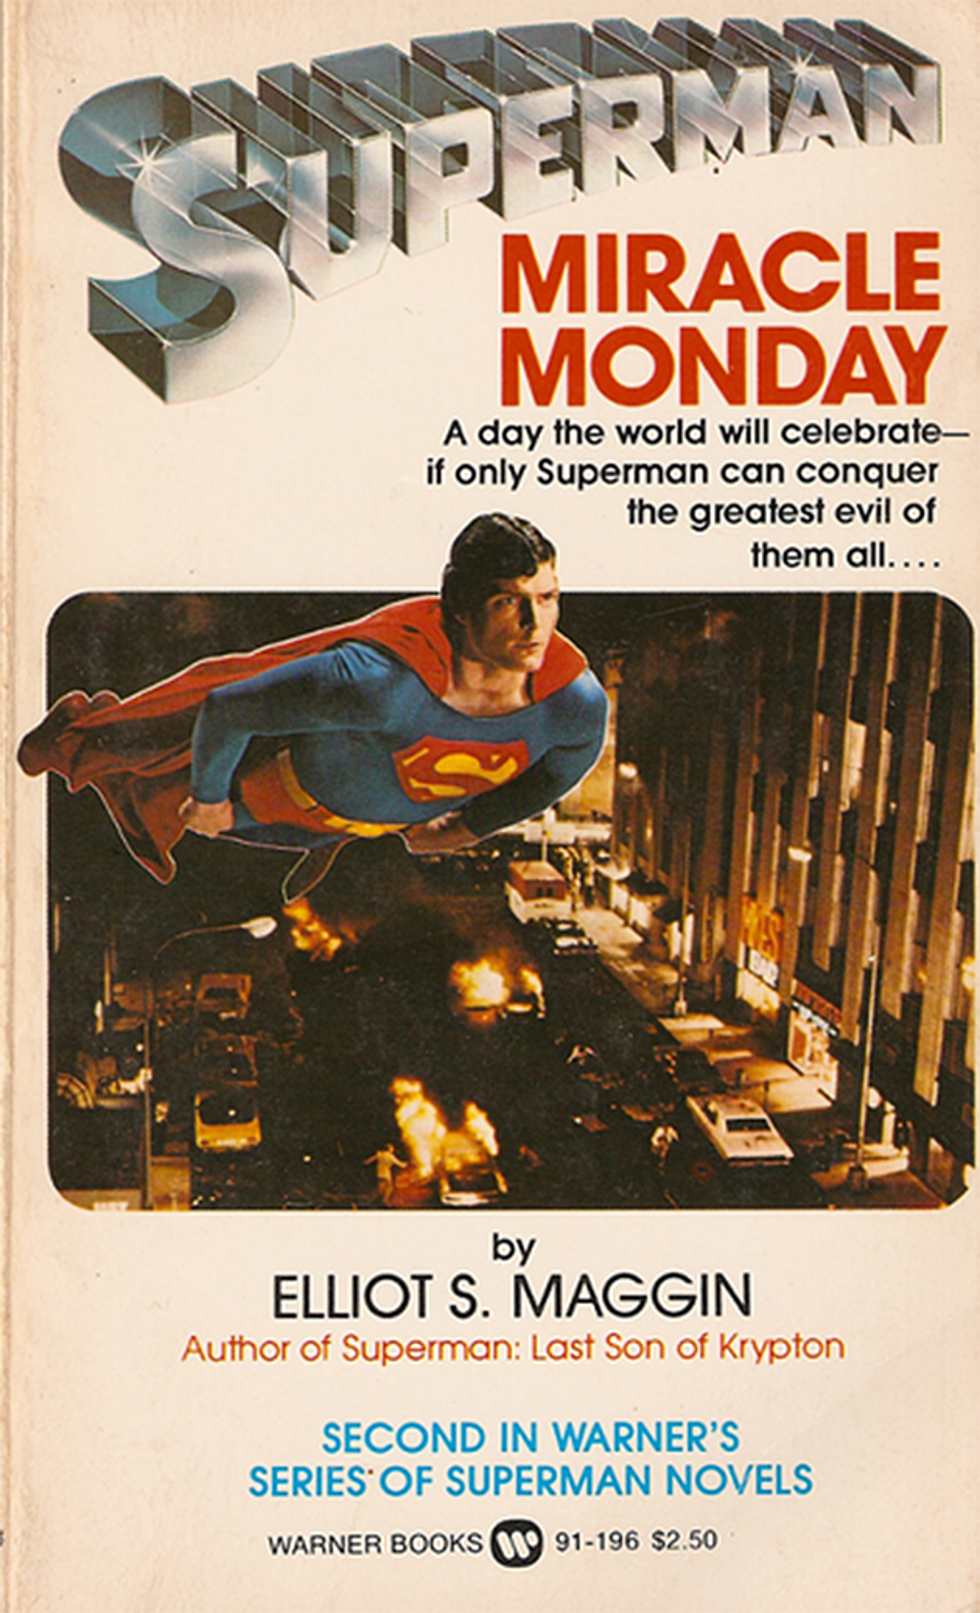 Как возрождение DC изменило смысл праздника Супермена «Чудесный понедельник»